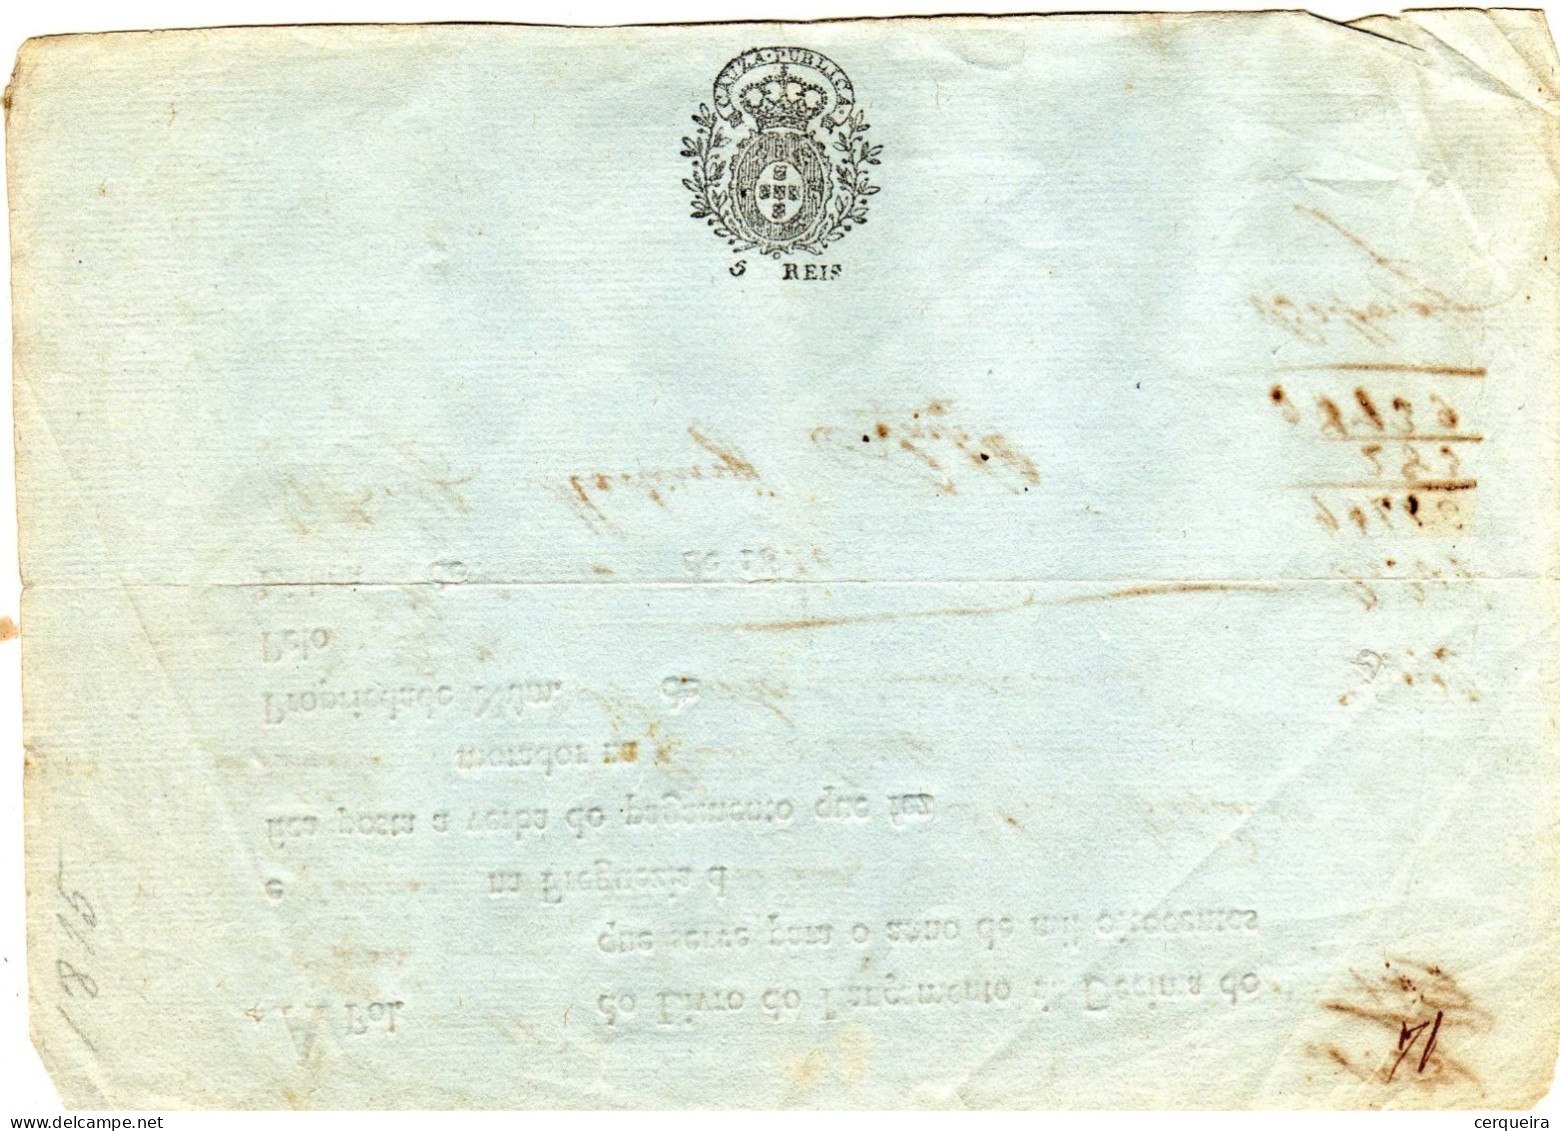 LANÇAMENTO DE DECIMA  1815 COM SELO IMPRESSO DE  5 REIS - Lettres & Documents